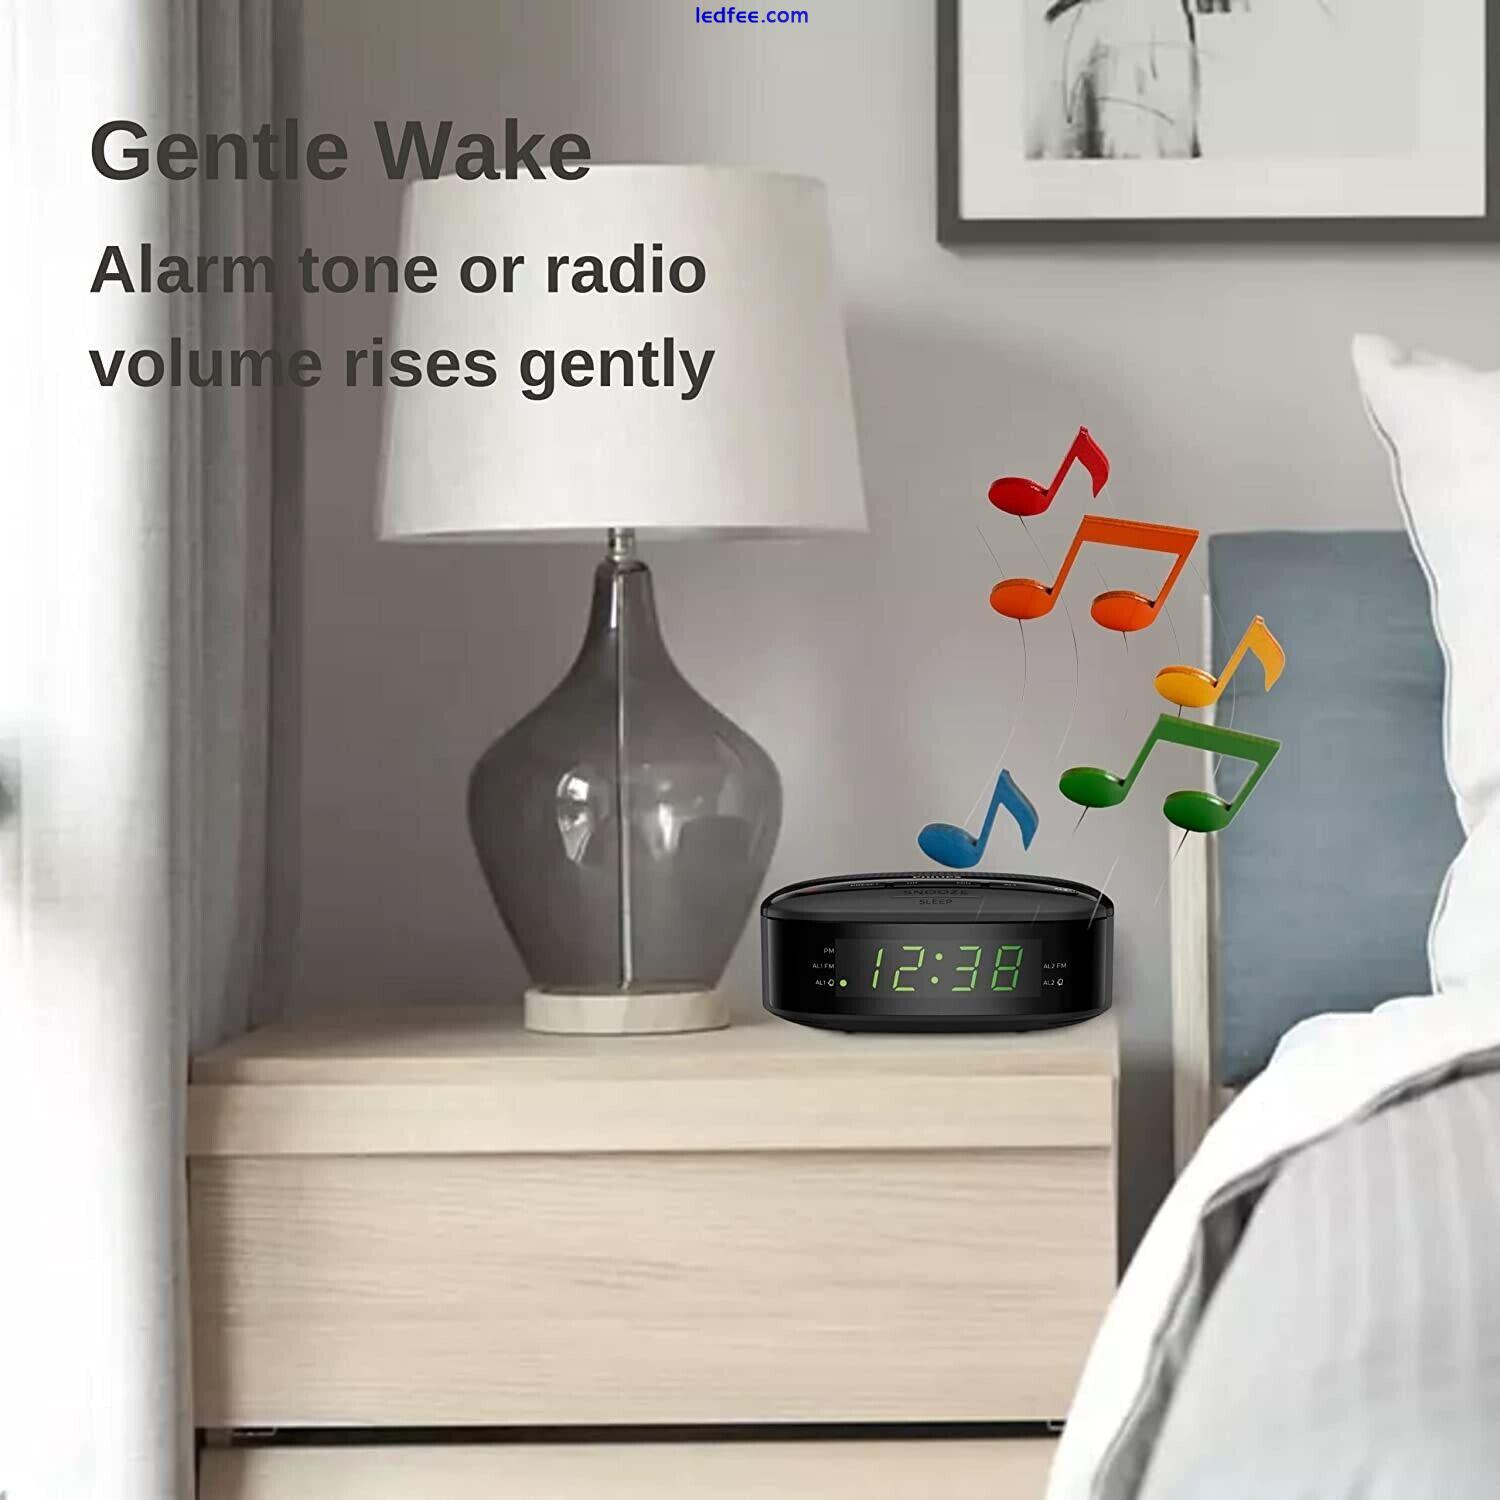 Philips Digital Alarm Clock FM Radio. LED Display, Easy Snooze. Sleep Timer. 2 